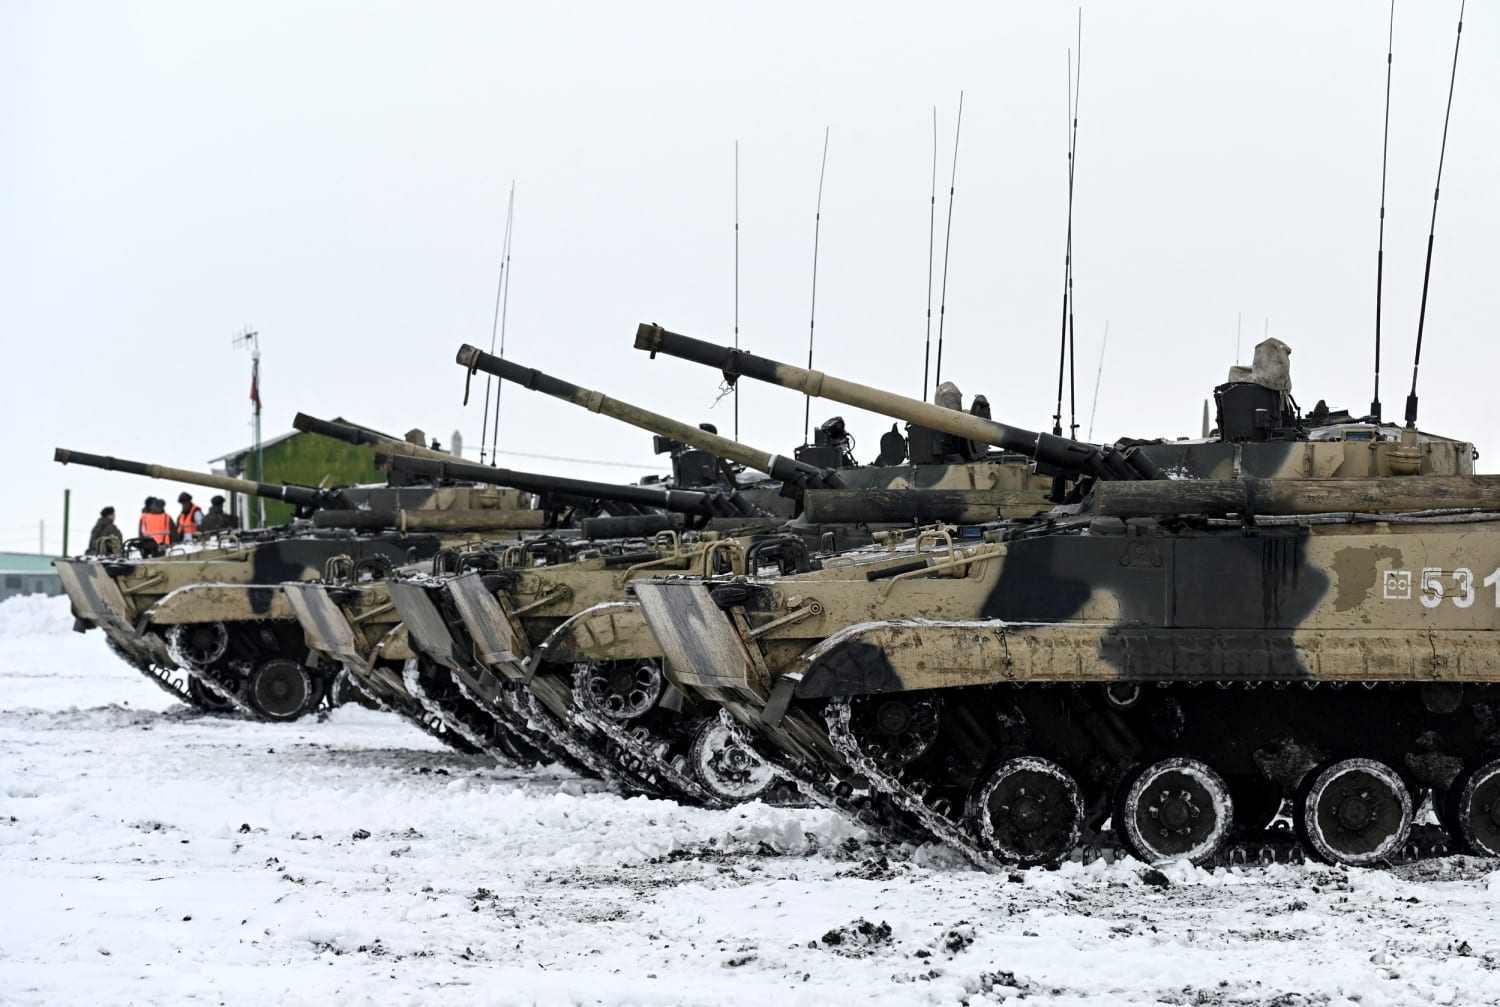 Russia says it won't start war with Ukraine after Biden warns Feb. invasion 'distinct possibility'